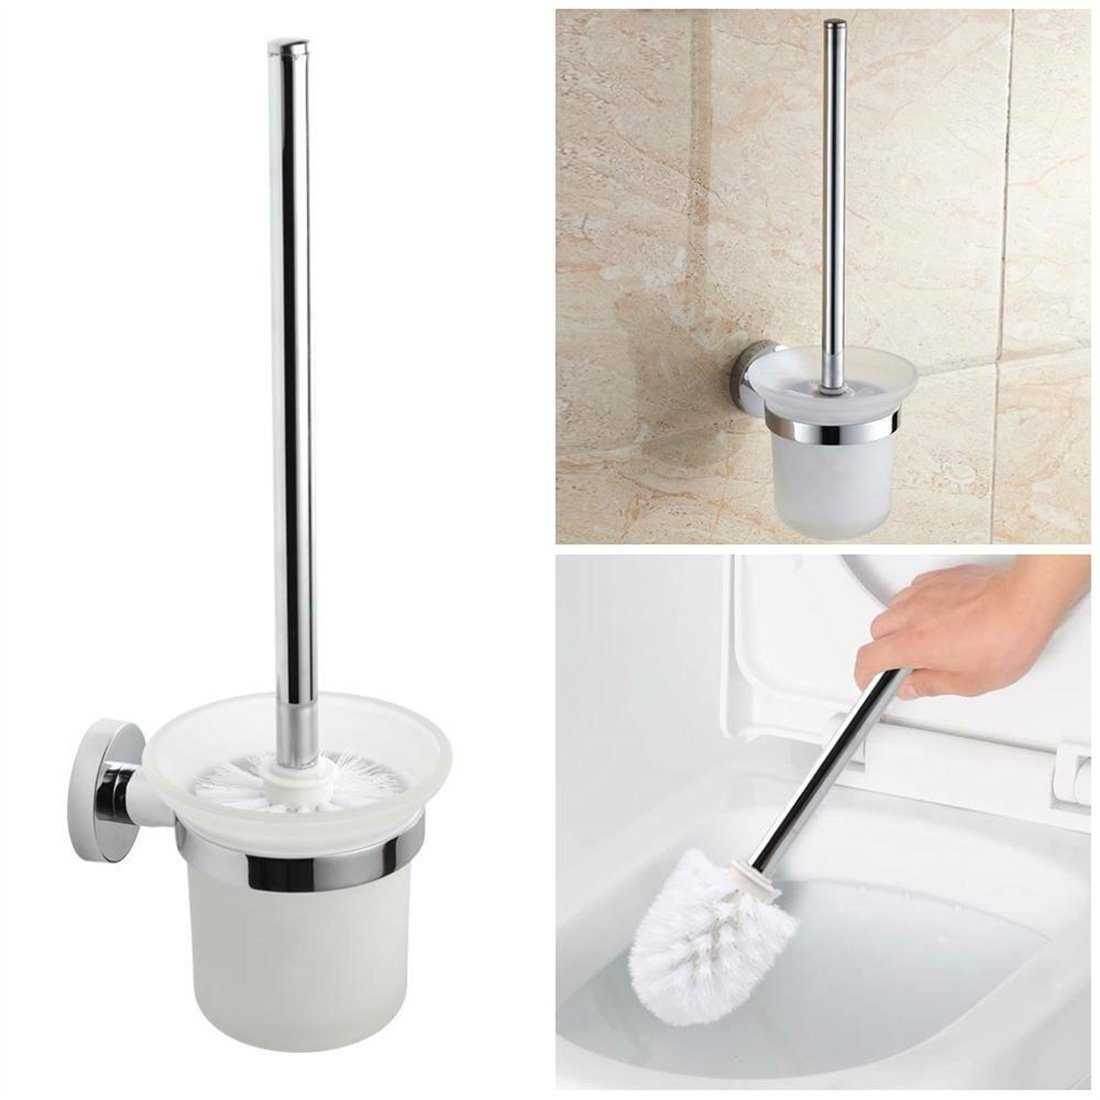 DÖRÖY WC-Reinigungsbürste Edelstahl + Bürstenhalter Klobürste Bad WC Wandmontage Bürste Garnitur